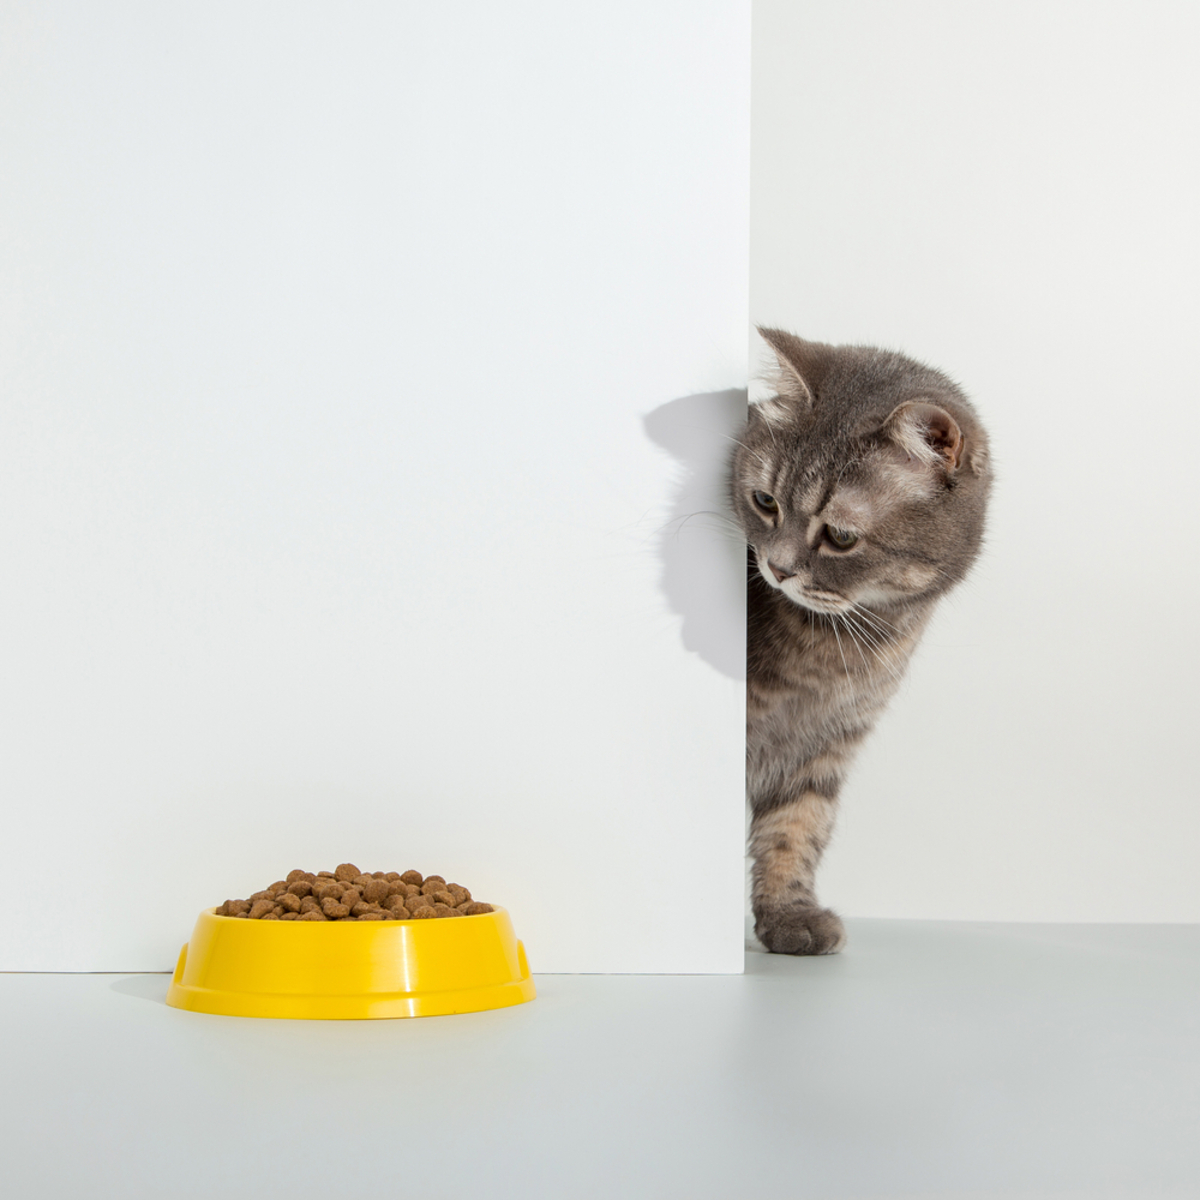 Kedi Yemek Yemiyor Ama Ödül Maması Yiyor: O İyi mi?